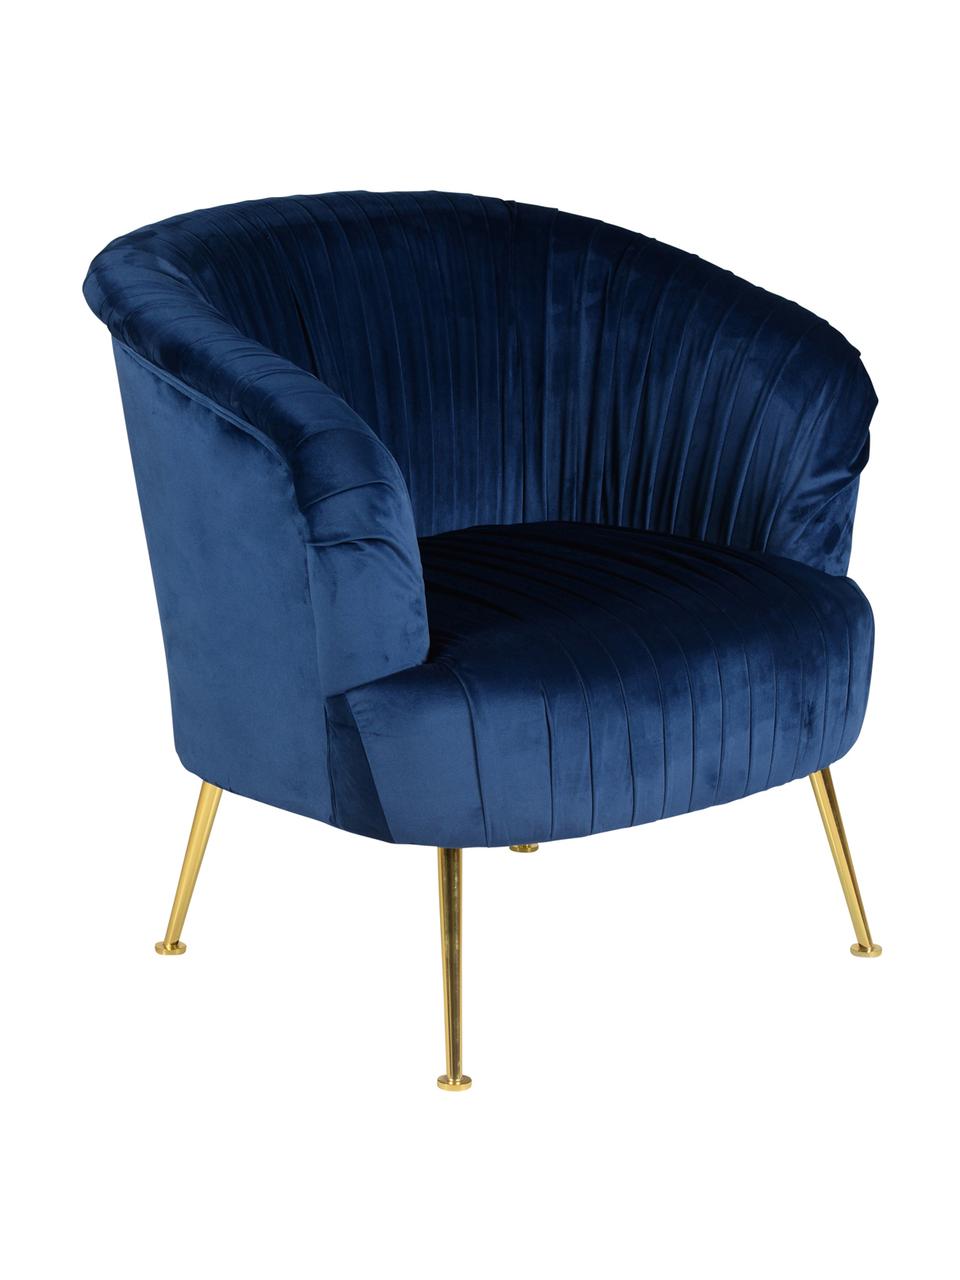 Fotel z aksamitu Diva, Tapicerka: aksamit poliestrowy 85 00, Nogi: metal lakierowany, Aksamit ciemny niebieski, S 73 x G 83 cm